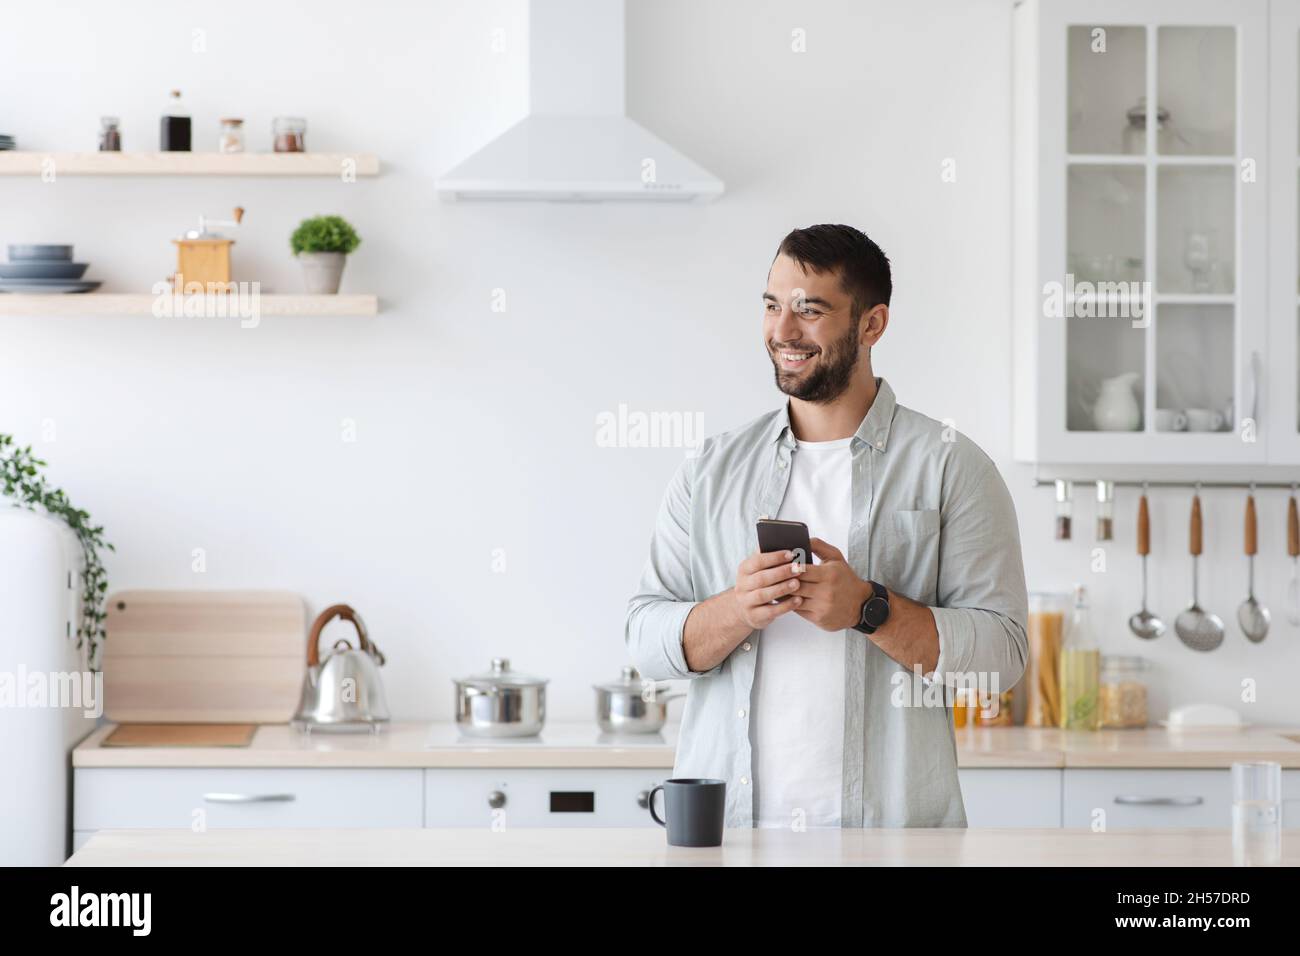 Bon homme de race blanche adulte avec un smartphone et une tasse de café regarder l'espace vide à l'intérieur de la cuisine Banque D'Images